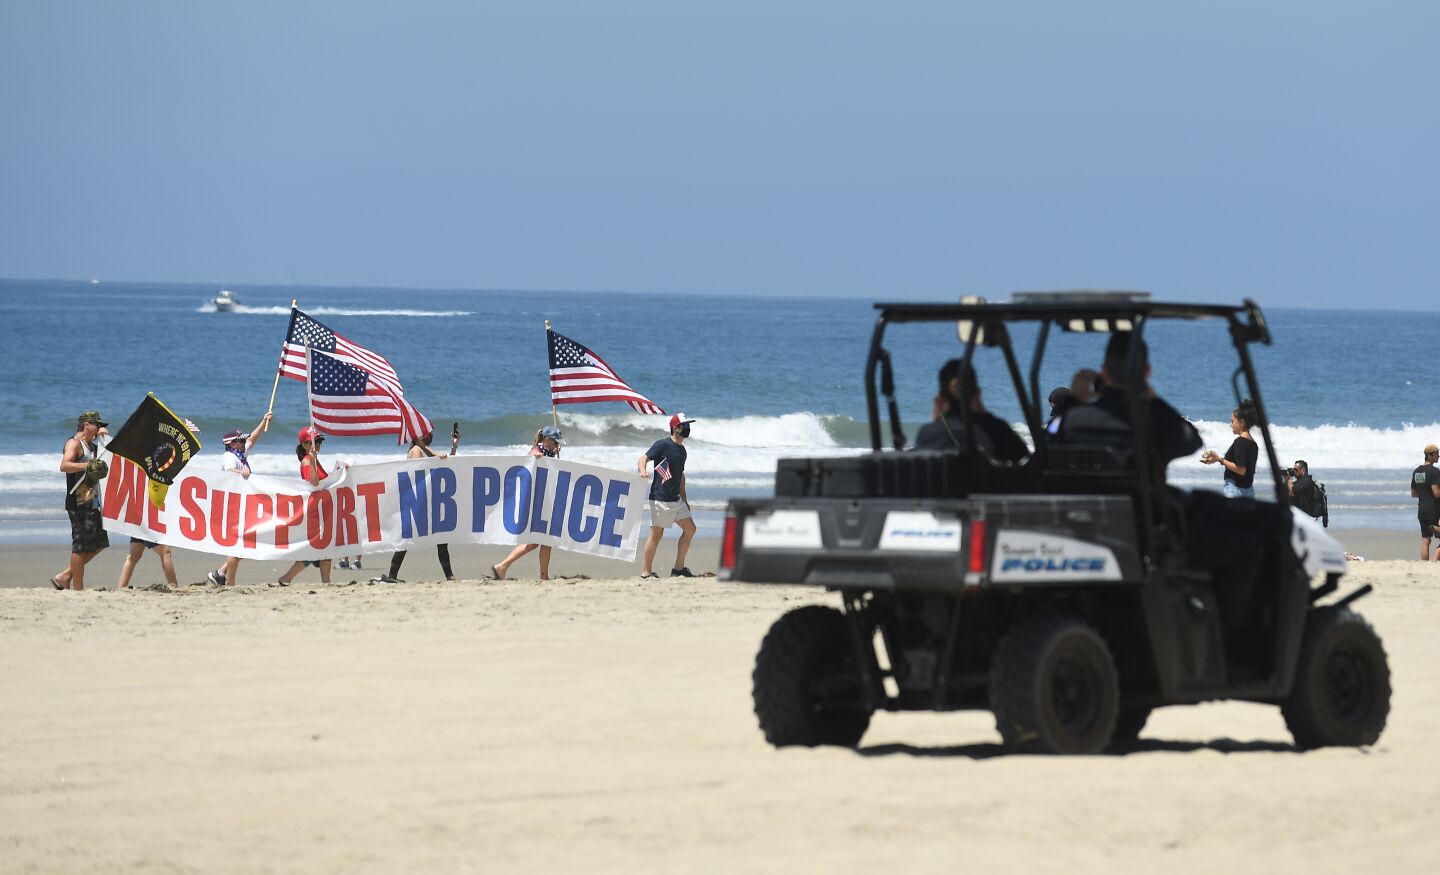 Protest in Newport Beach